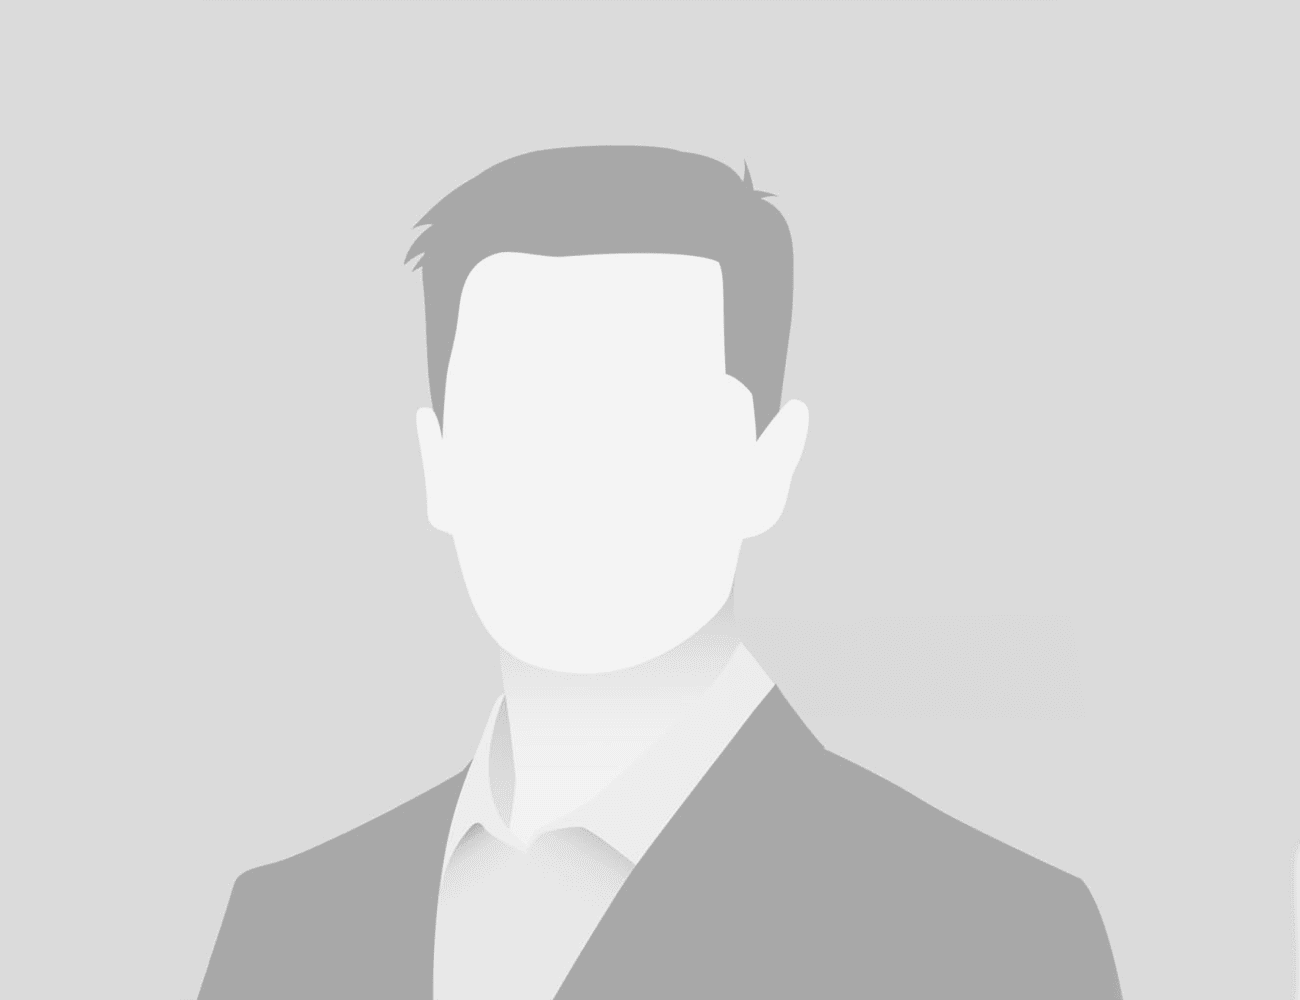 černobílá ilustrace anonymního muže